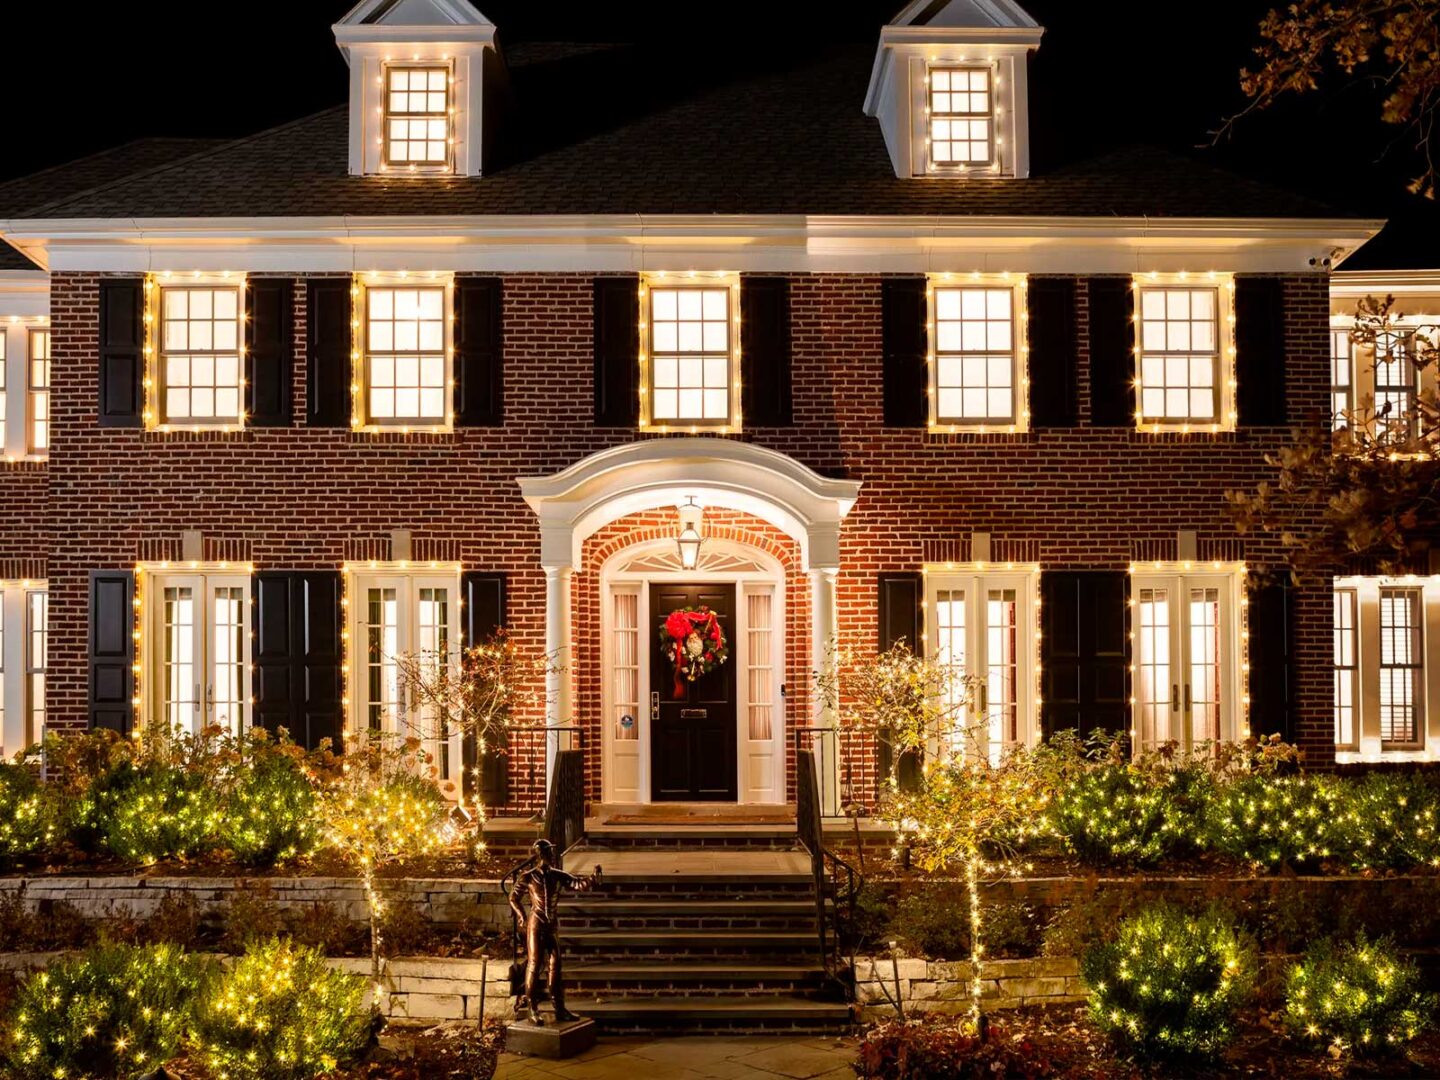 A la venta la mansión de ‘Solo en casa’ por 5,25 millones de dólares